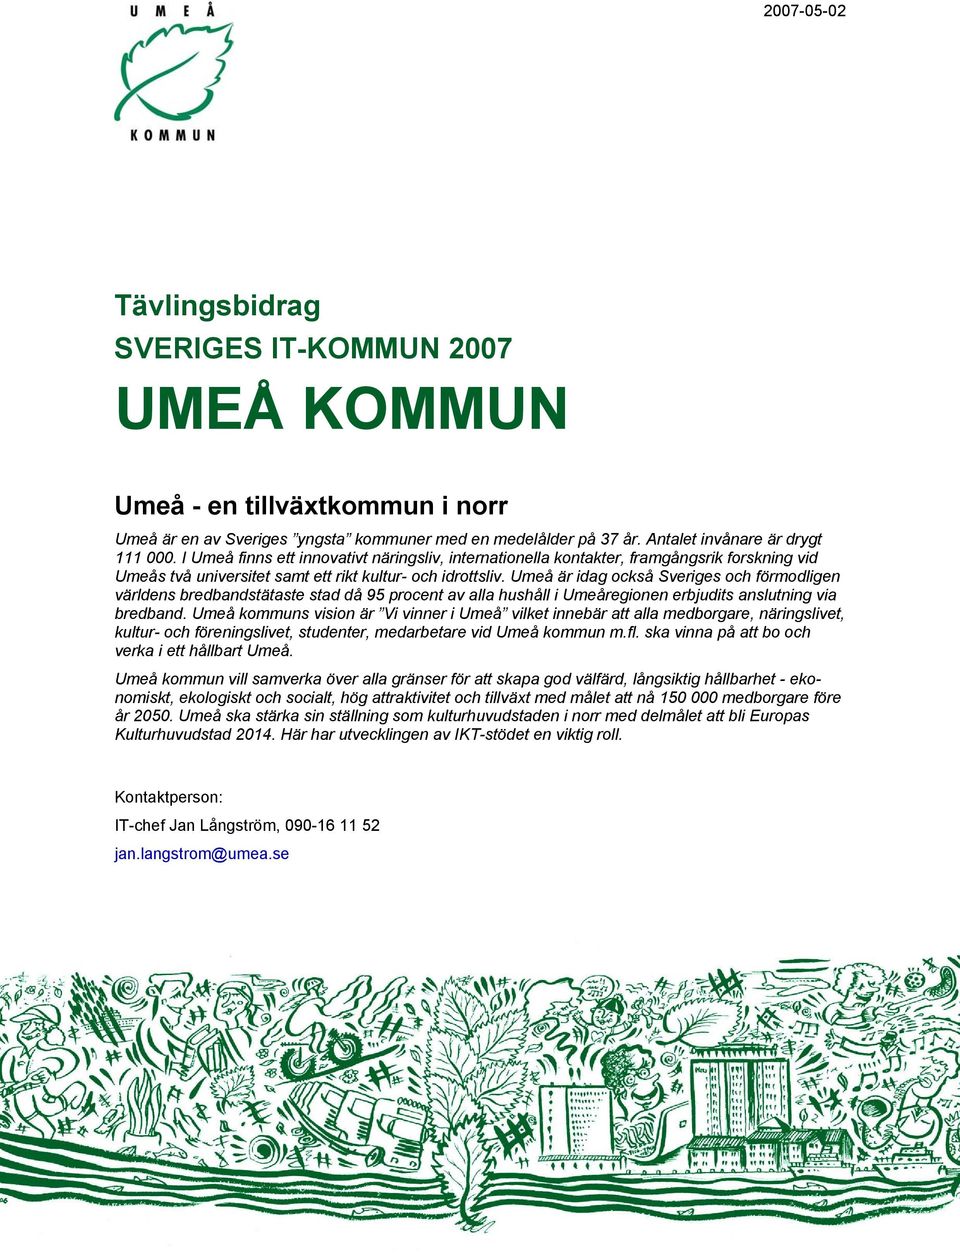 Umeå är idag också Sveriges och förmodligen världens bredbandstätaste stad då 95 procent av alla hushåll i Umeåregionen erbjudits anslutning via bredband.